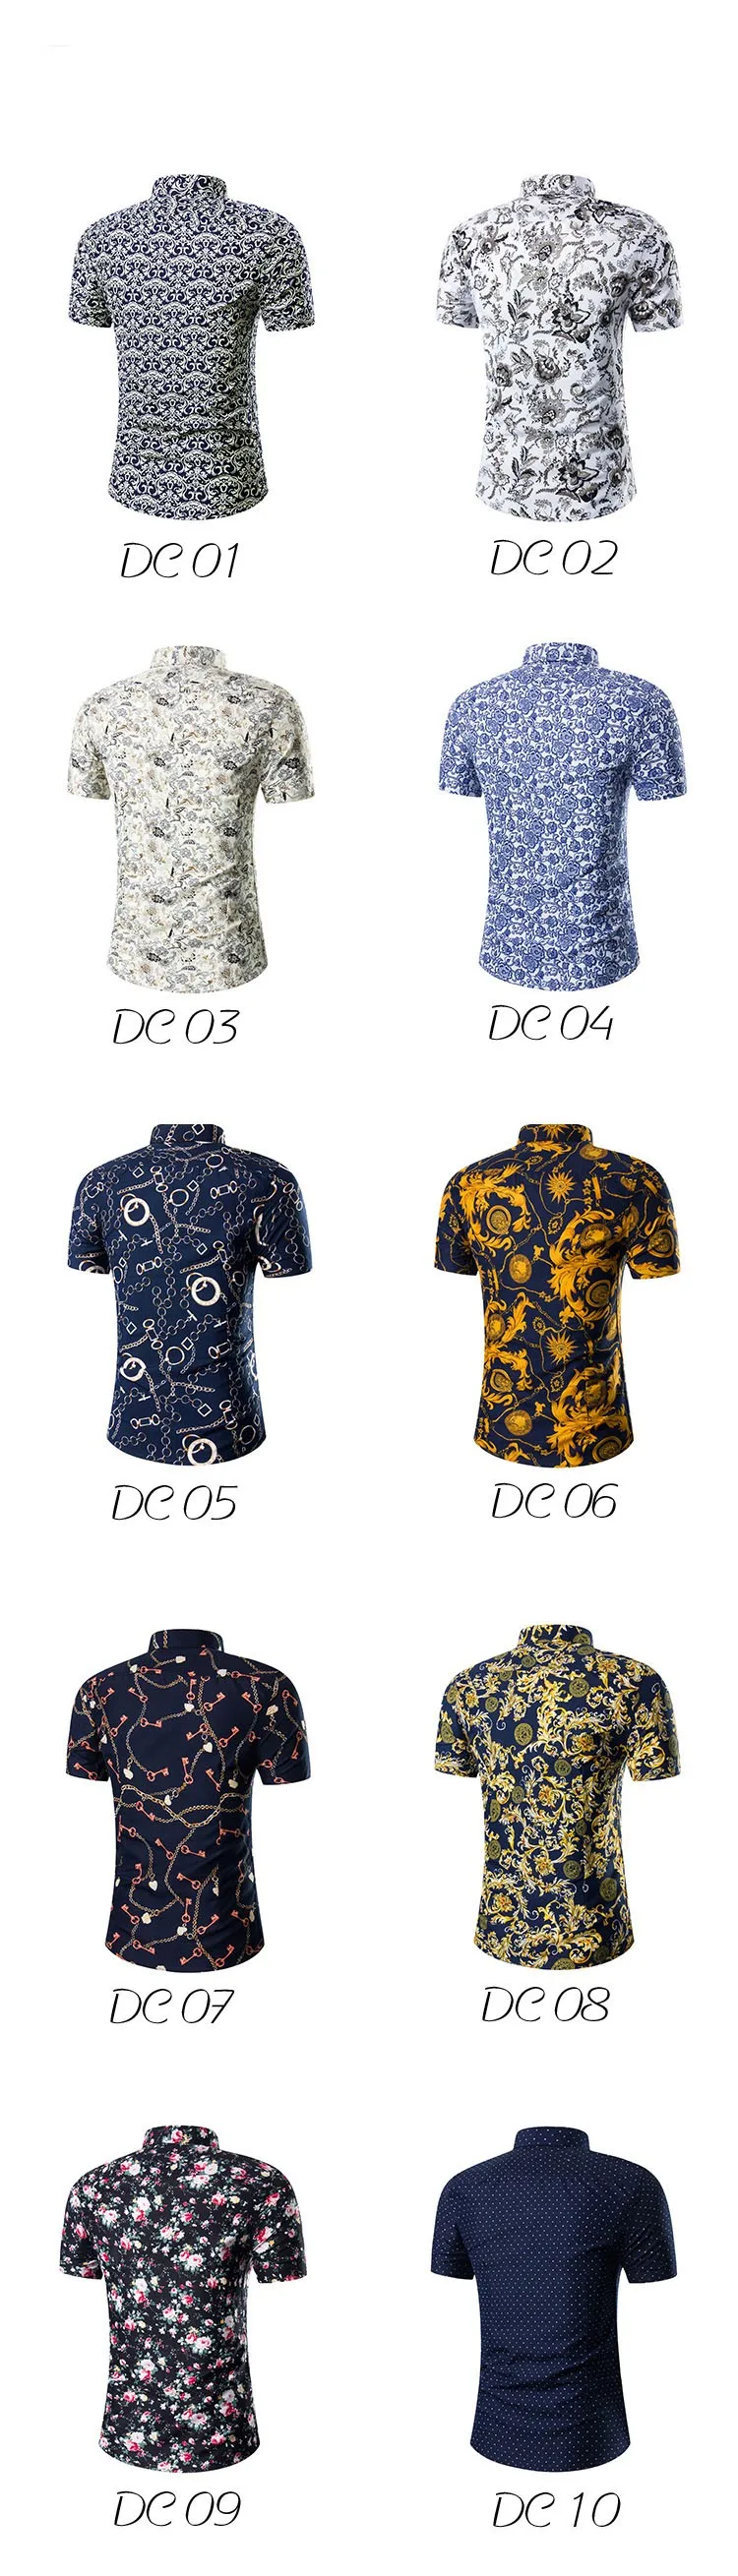 2019 модные Для мужчин s короткий рукав гавайская рубашка летние Повседневное футболка с цветочным принтом для Для мужчин Азиатский Размеры